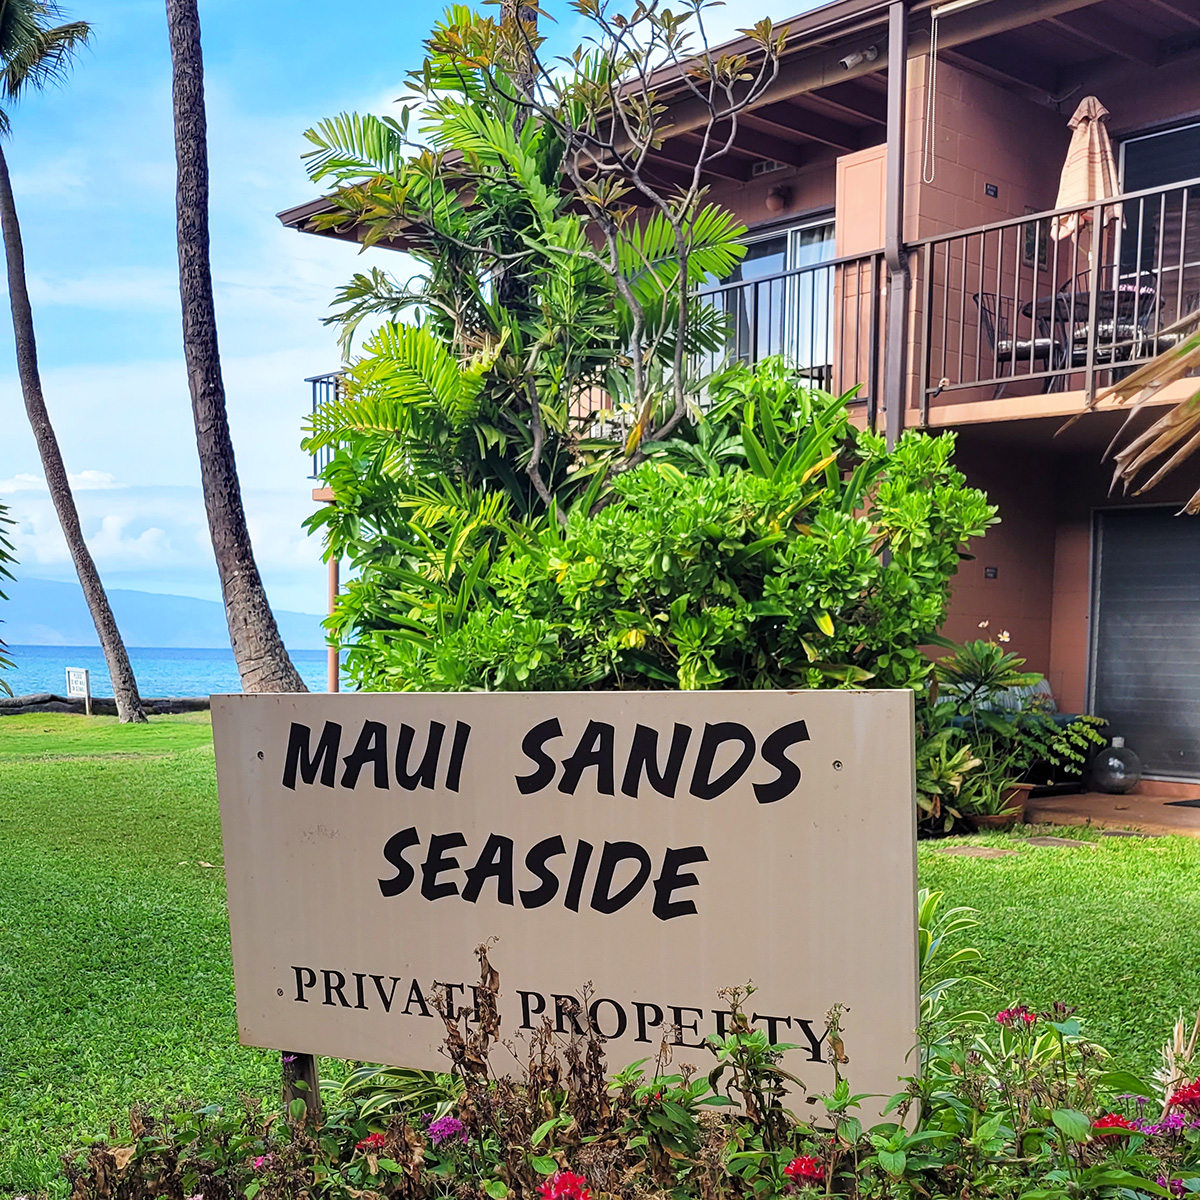 Maui Sands Seaside